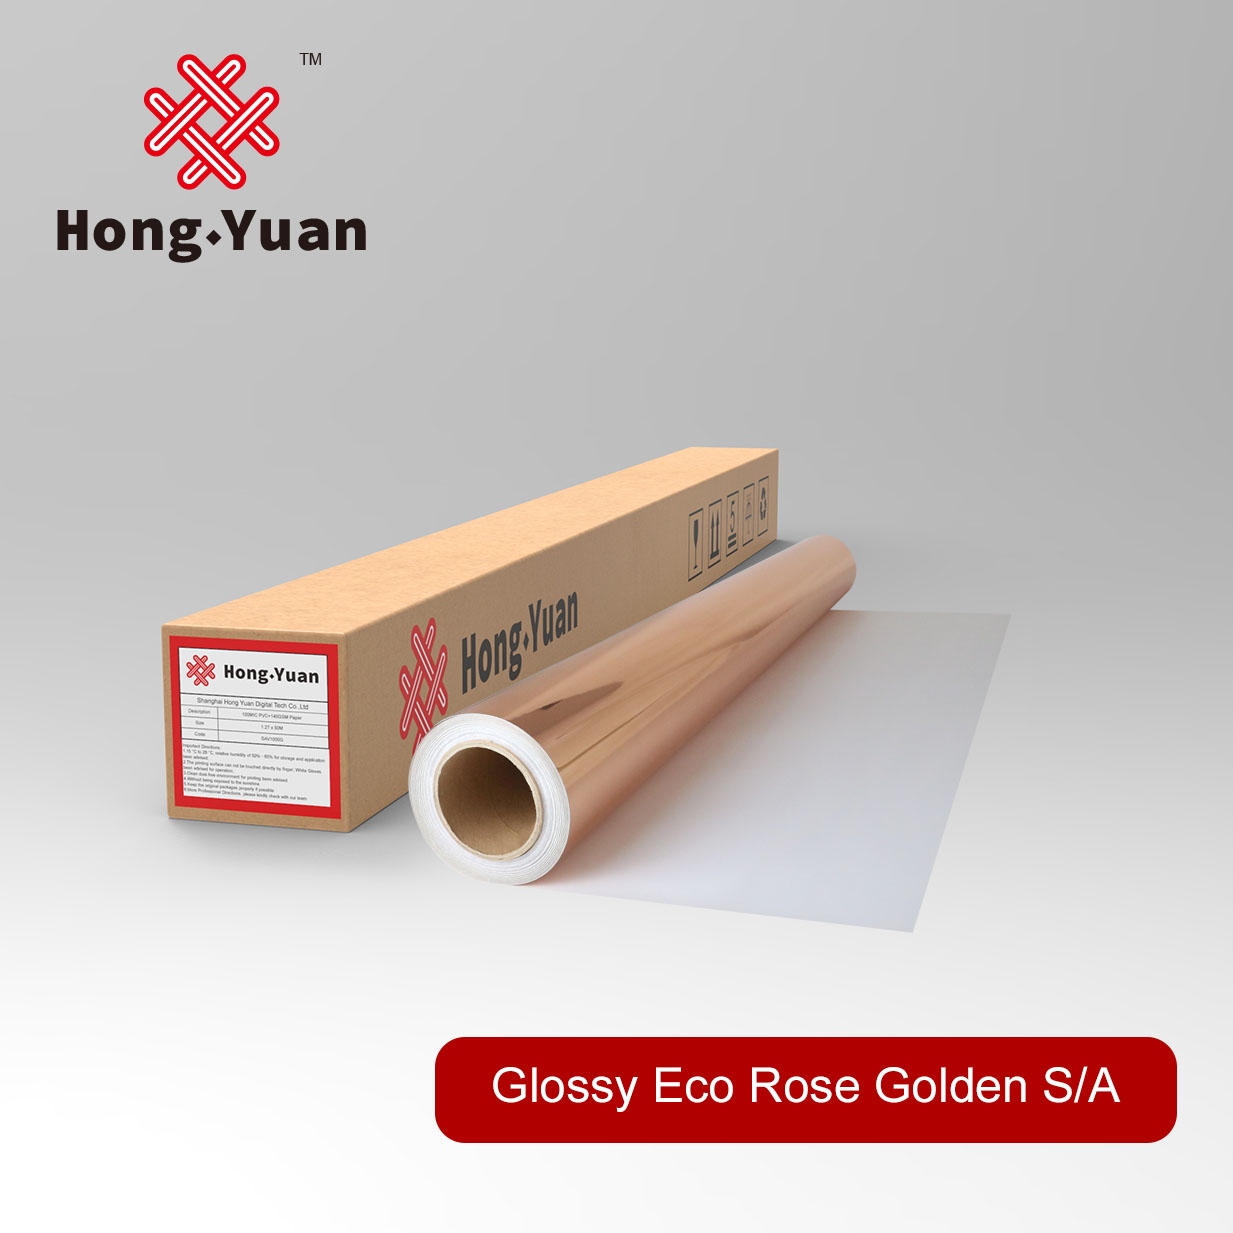 Glossy Eco Rose Golden Film S/A ESR100G